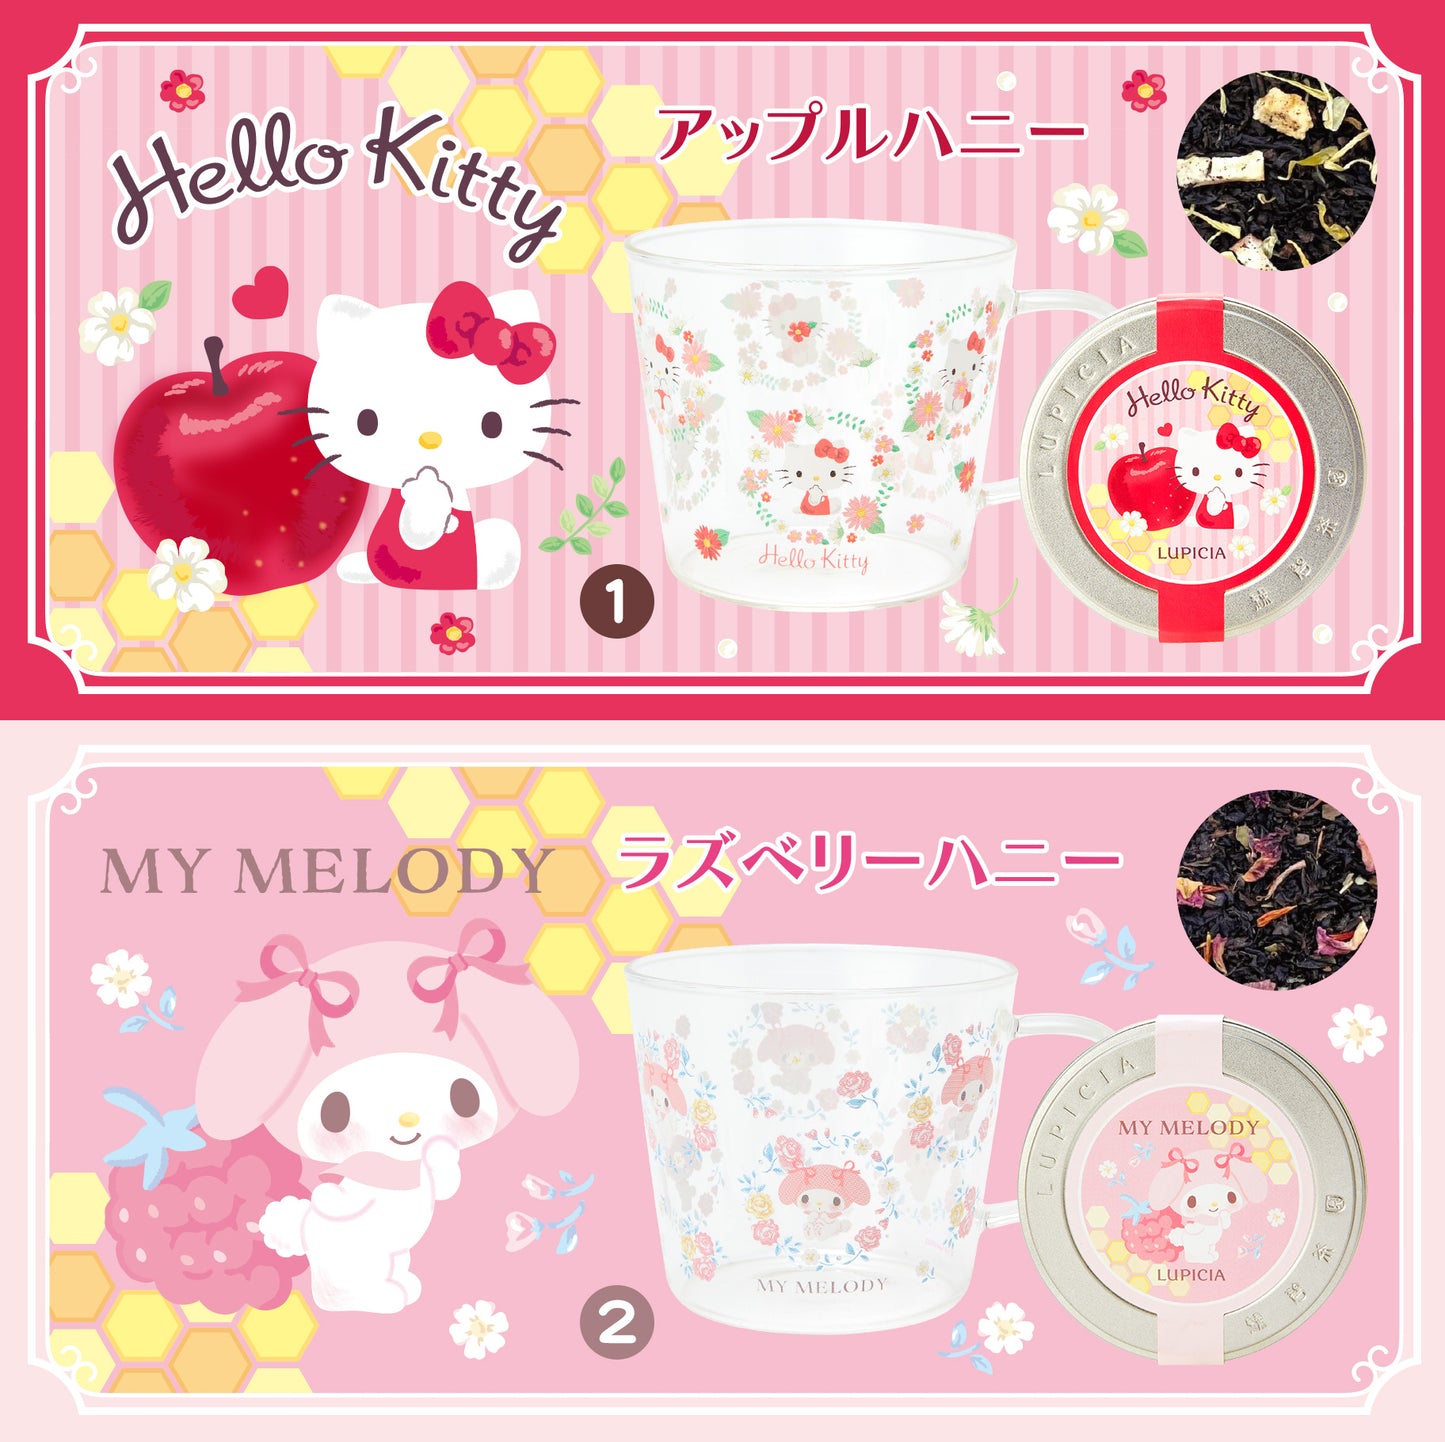 【Order】Lupicia x Sanrio Tea with Mug Cup Gift Set